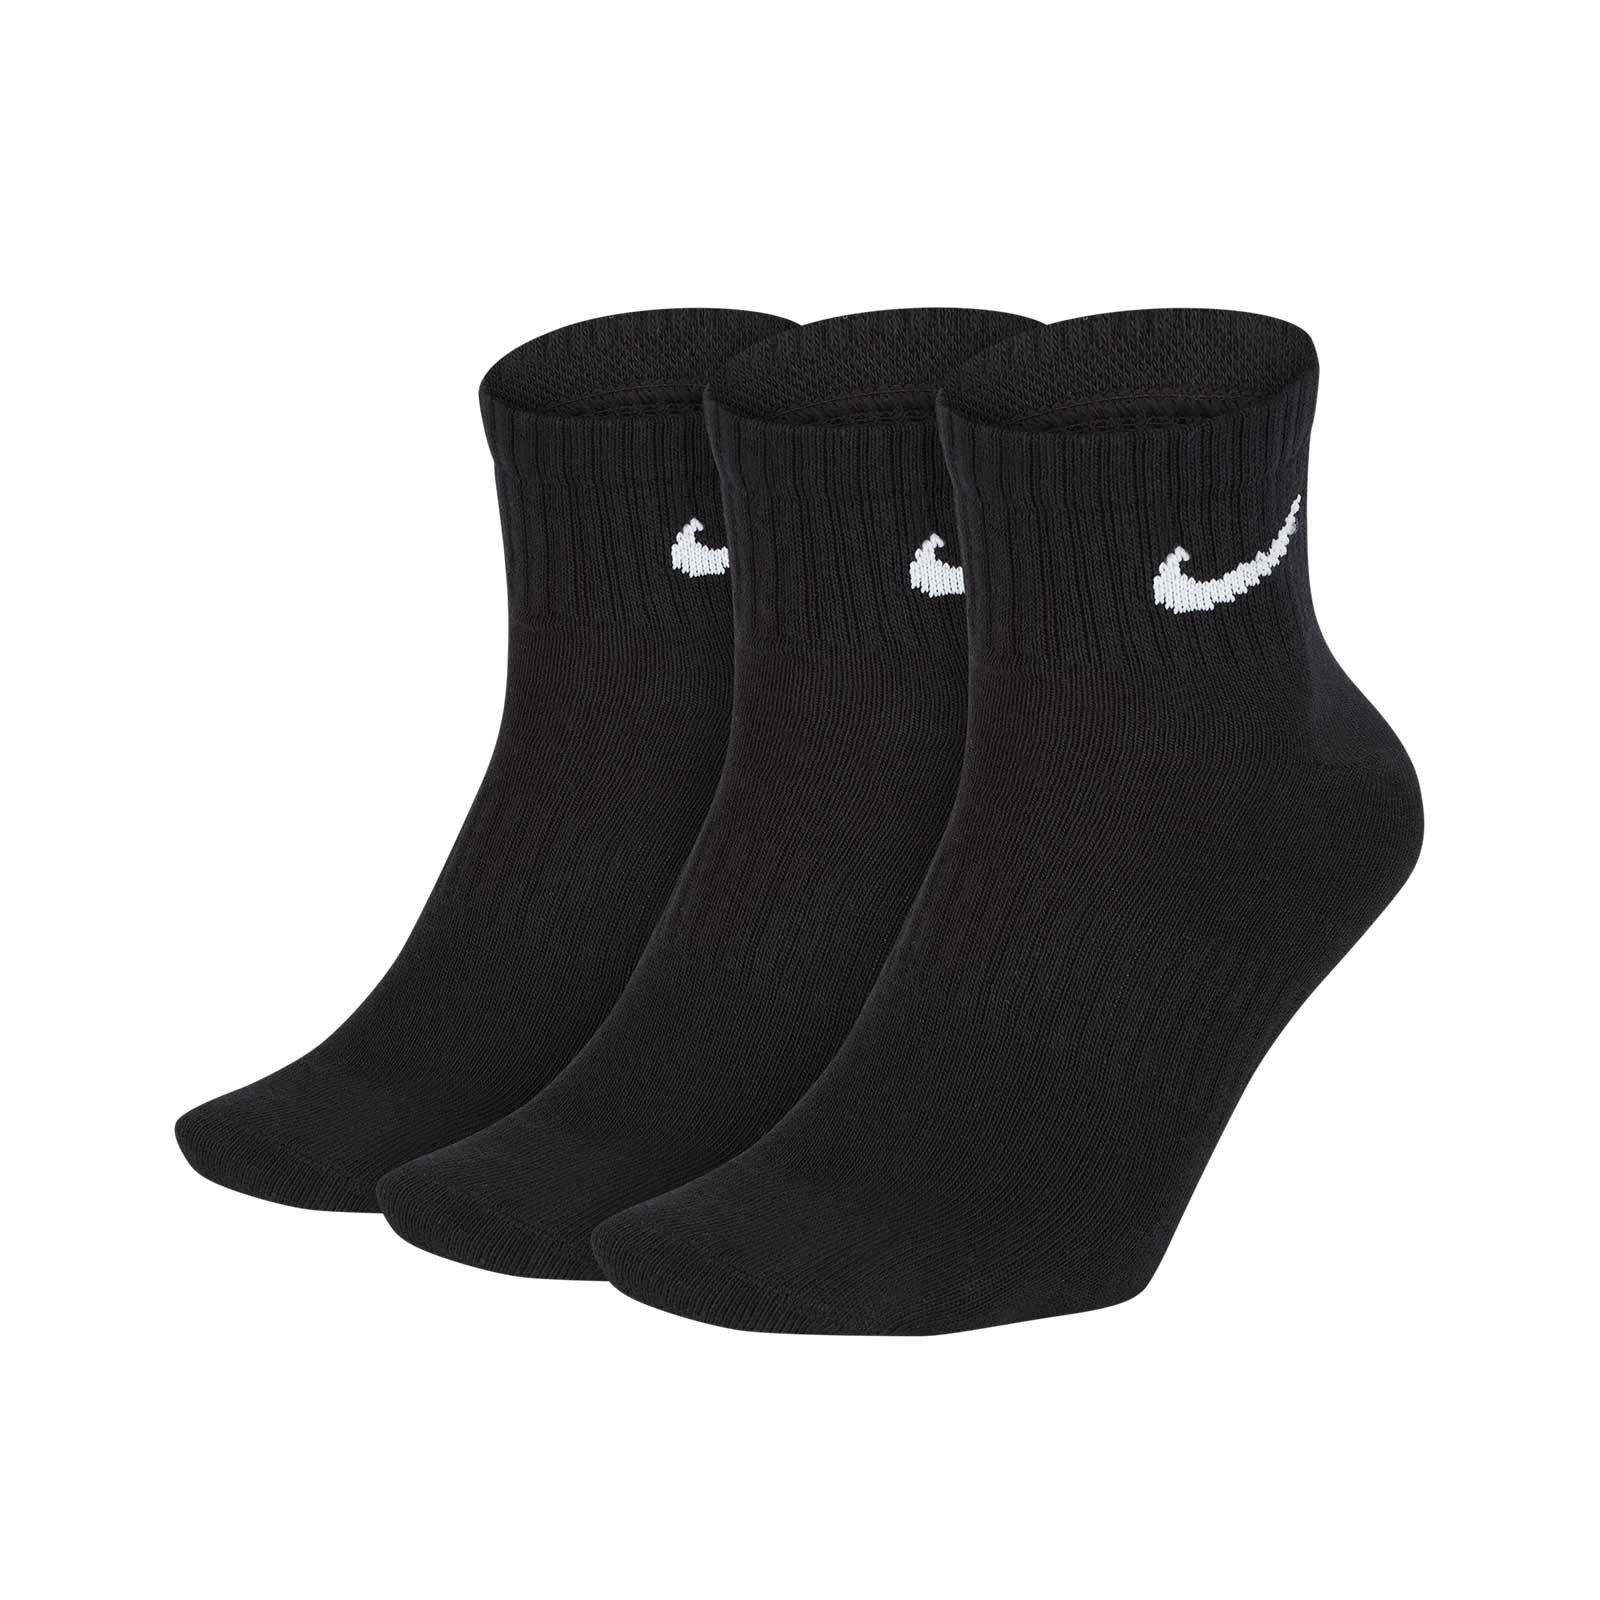 Pack 5 calcetines de deporte - Negro/Balones de fútbol - NIÑOS